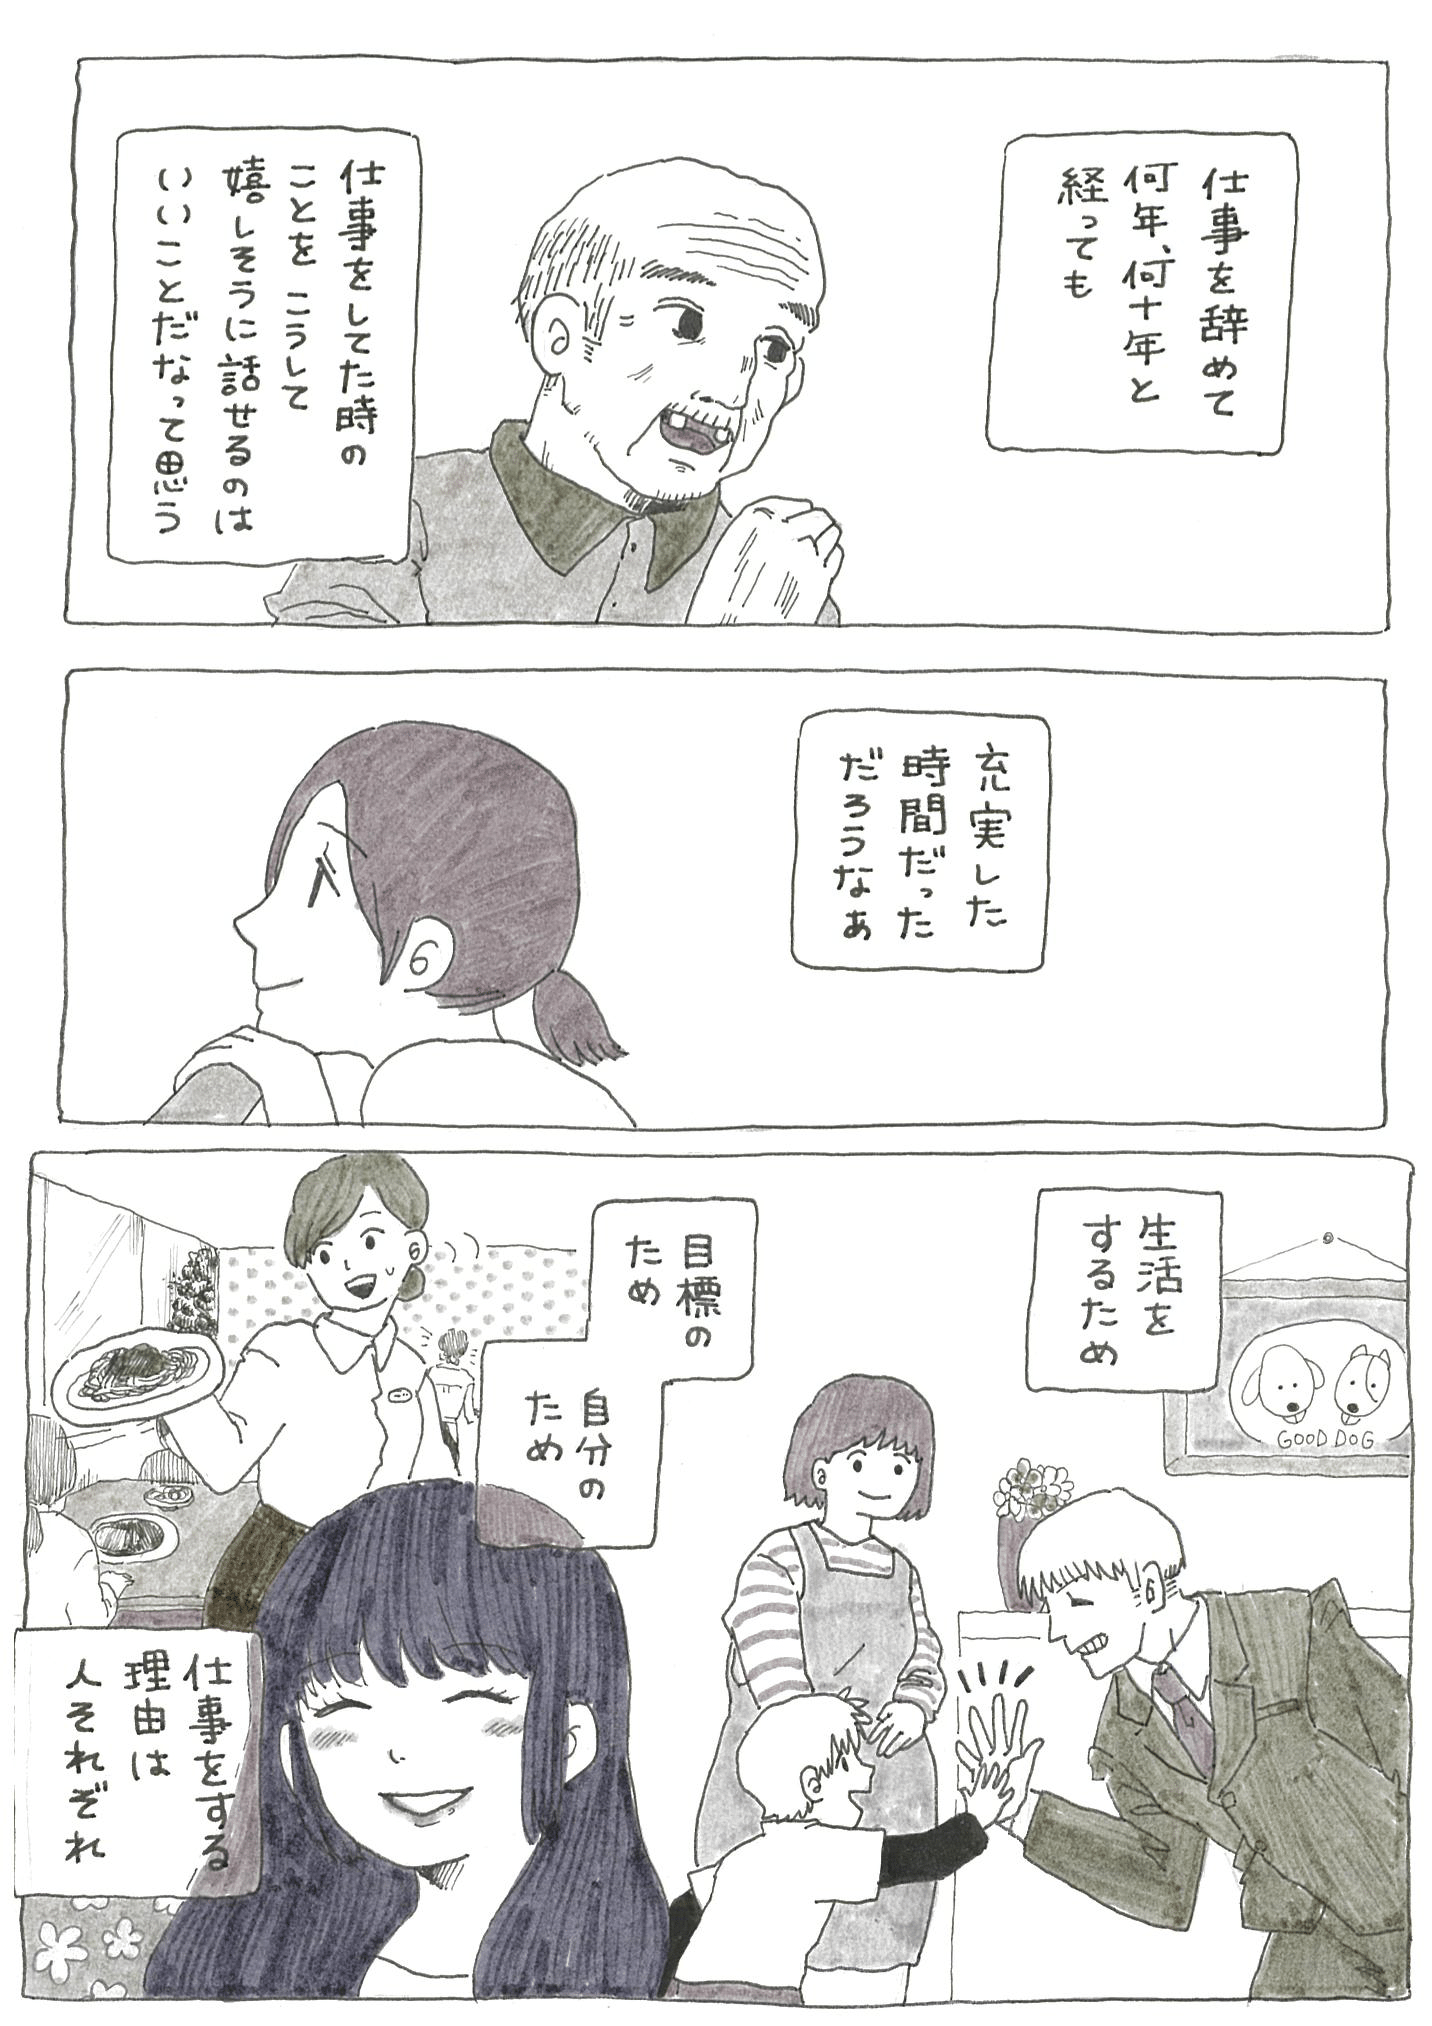 【2話】大塚様コラム_仕事の話-4.png